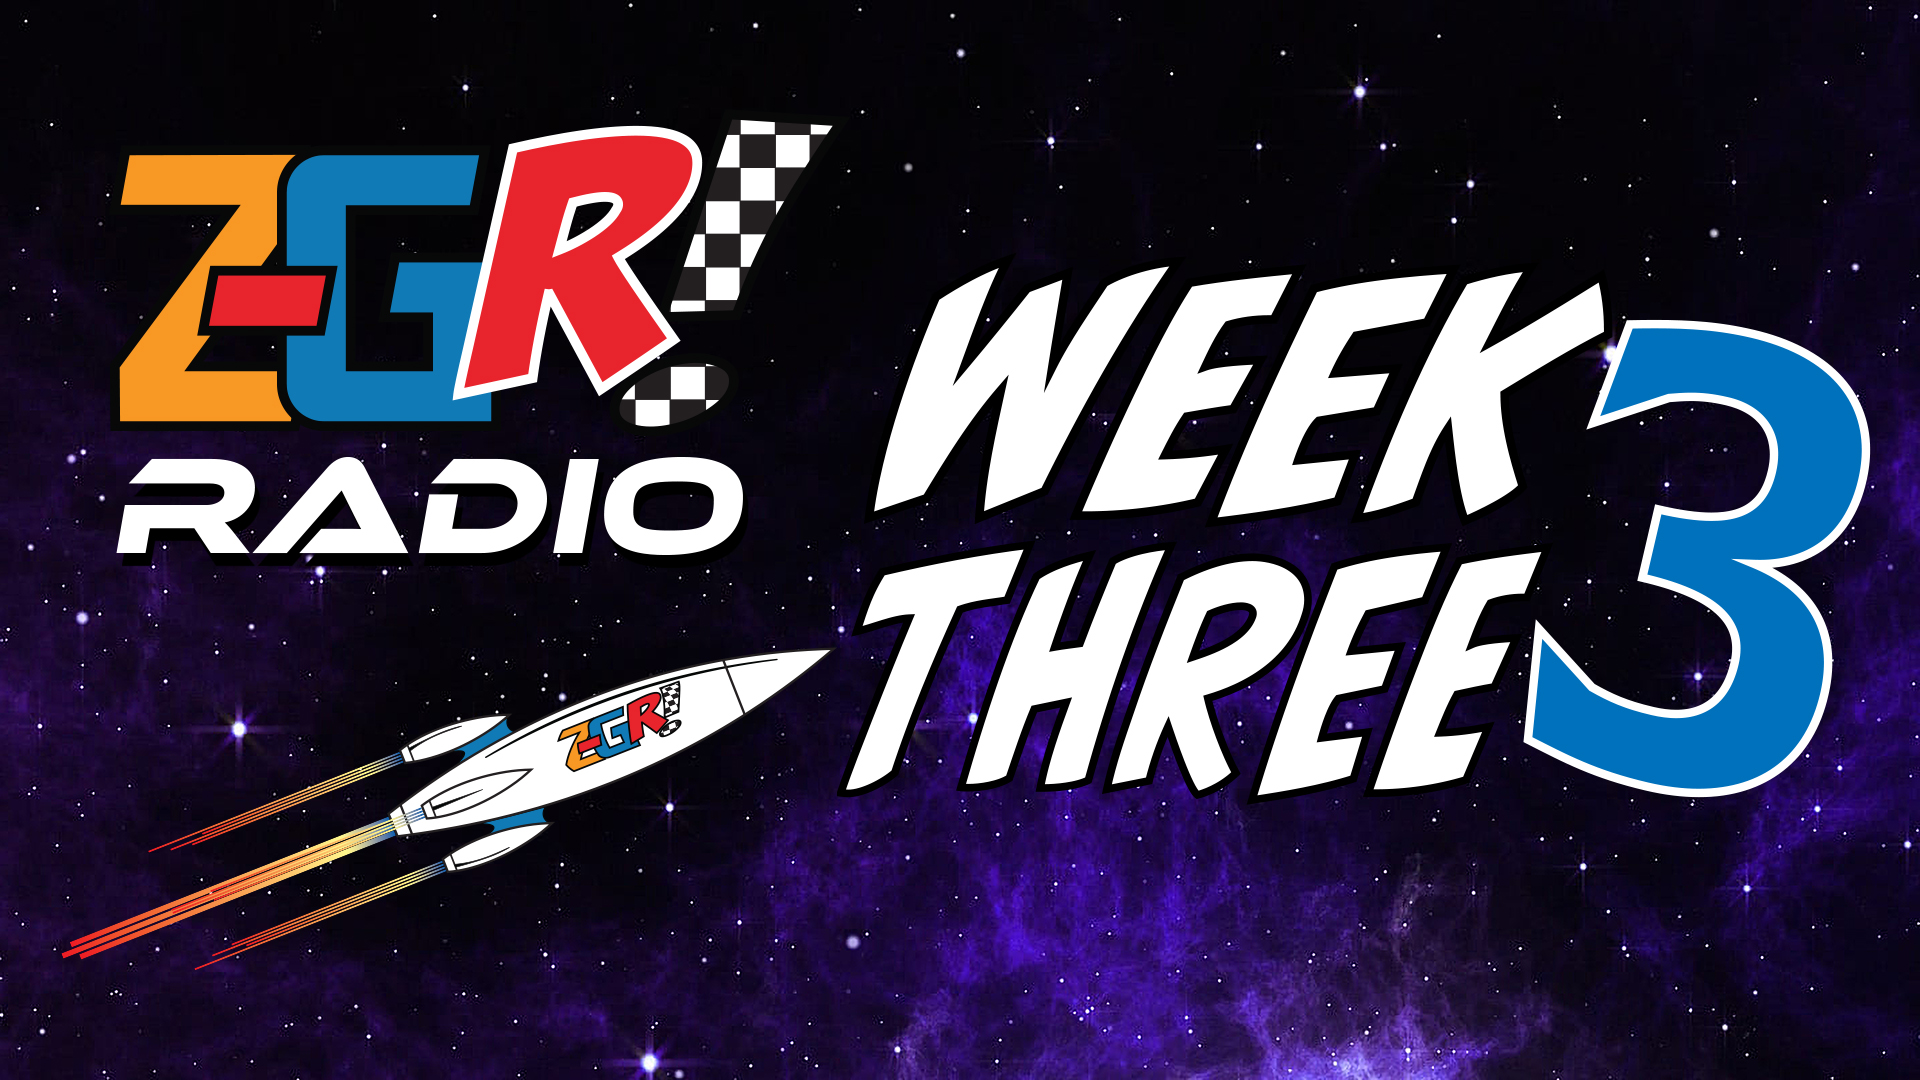 Z-GR! Radio Week Three Wrap-Up